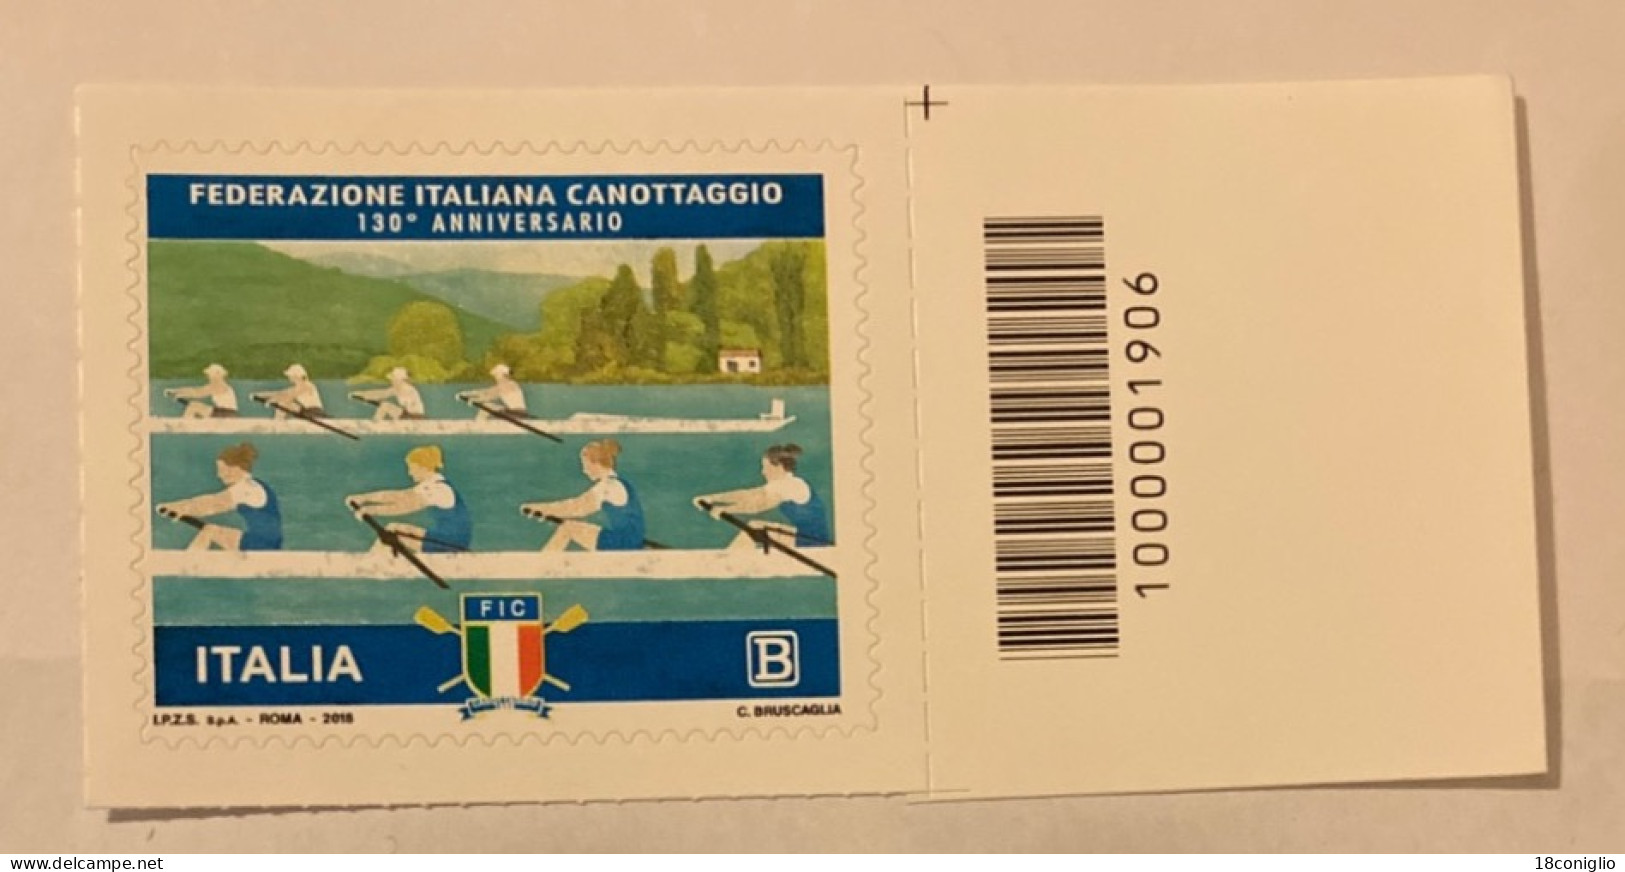 Italia 2018 Codice A Barre 1906 Federazione Italiana Canottaggio - Codici A Barre